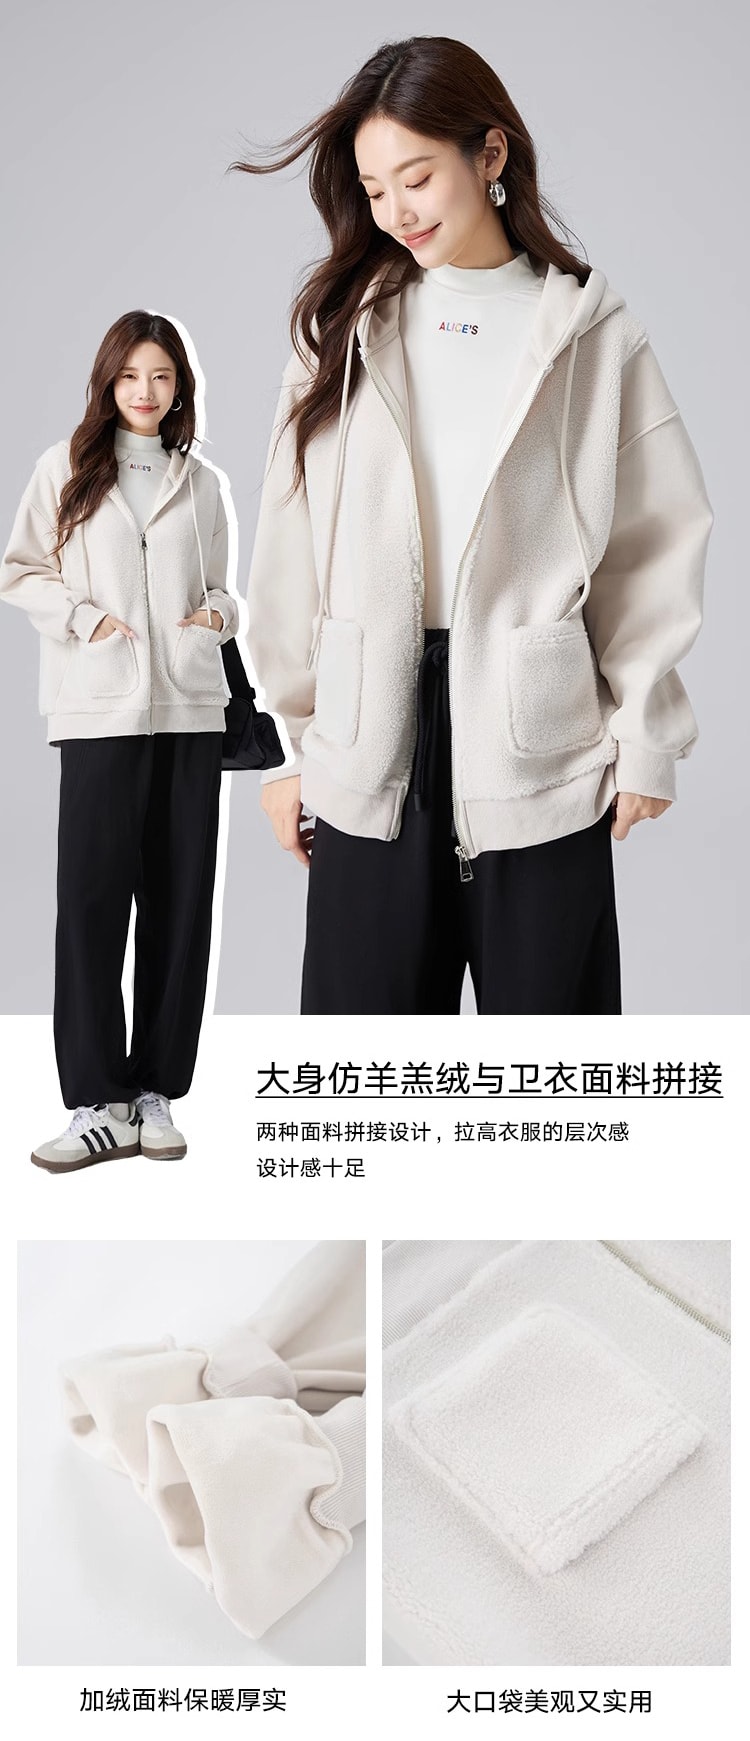 【中国直邮】HSPM 新款拼接连帽卫衣外套 米白色升级版(内里加绒) S